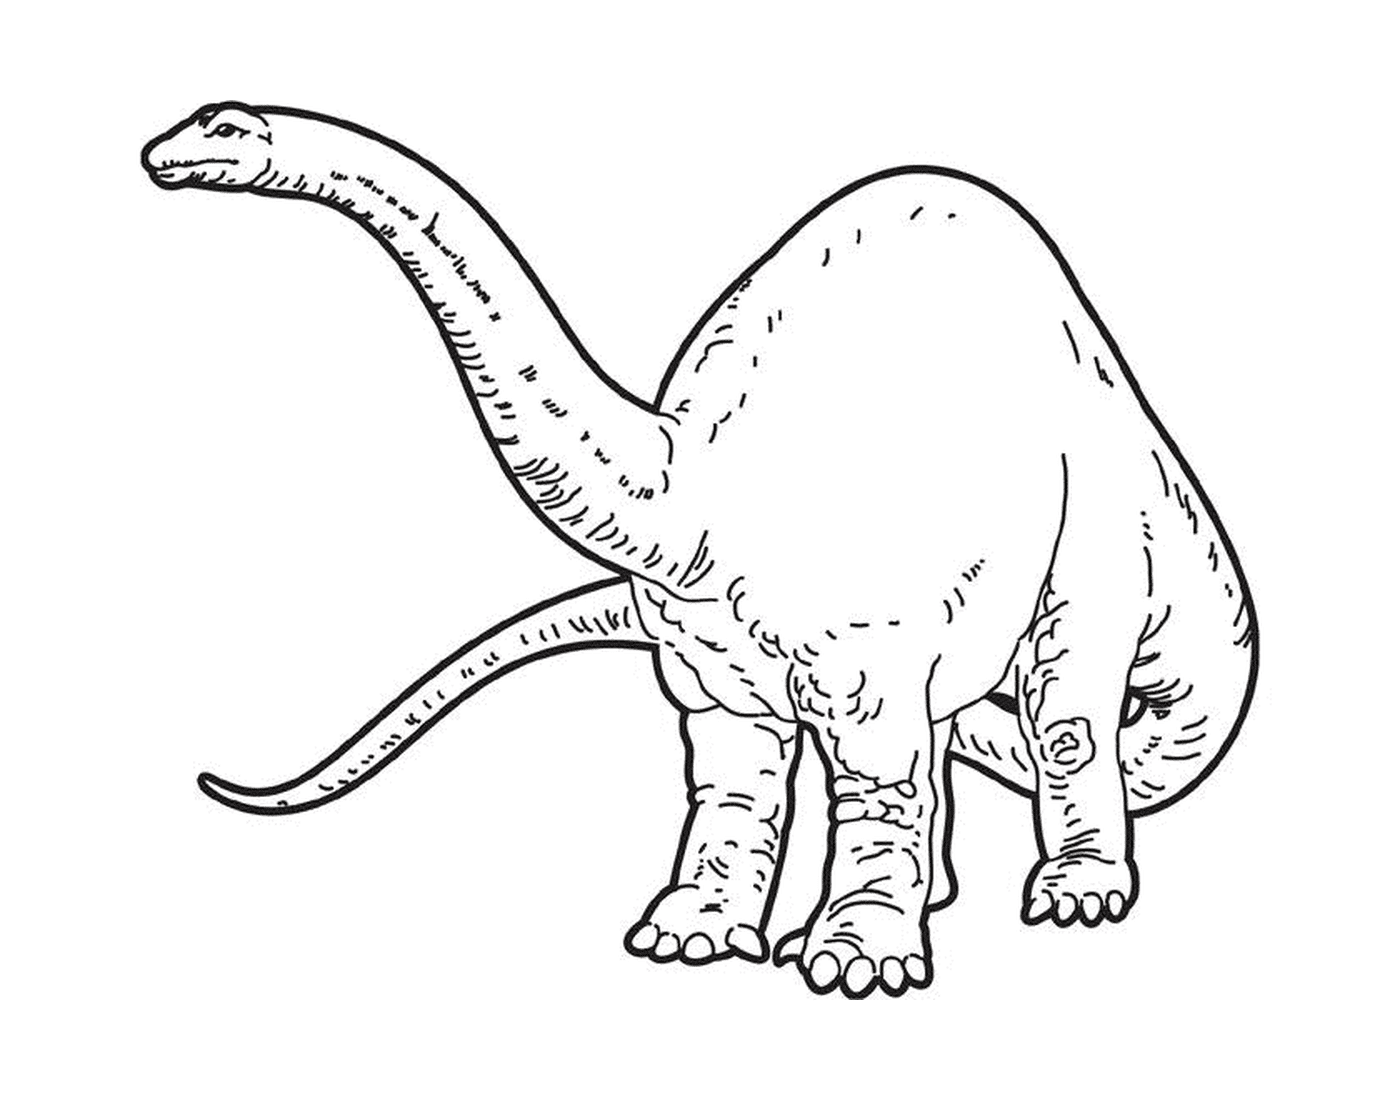  Un dinosaurio con una cola larga 